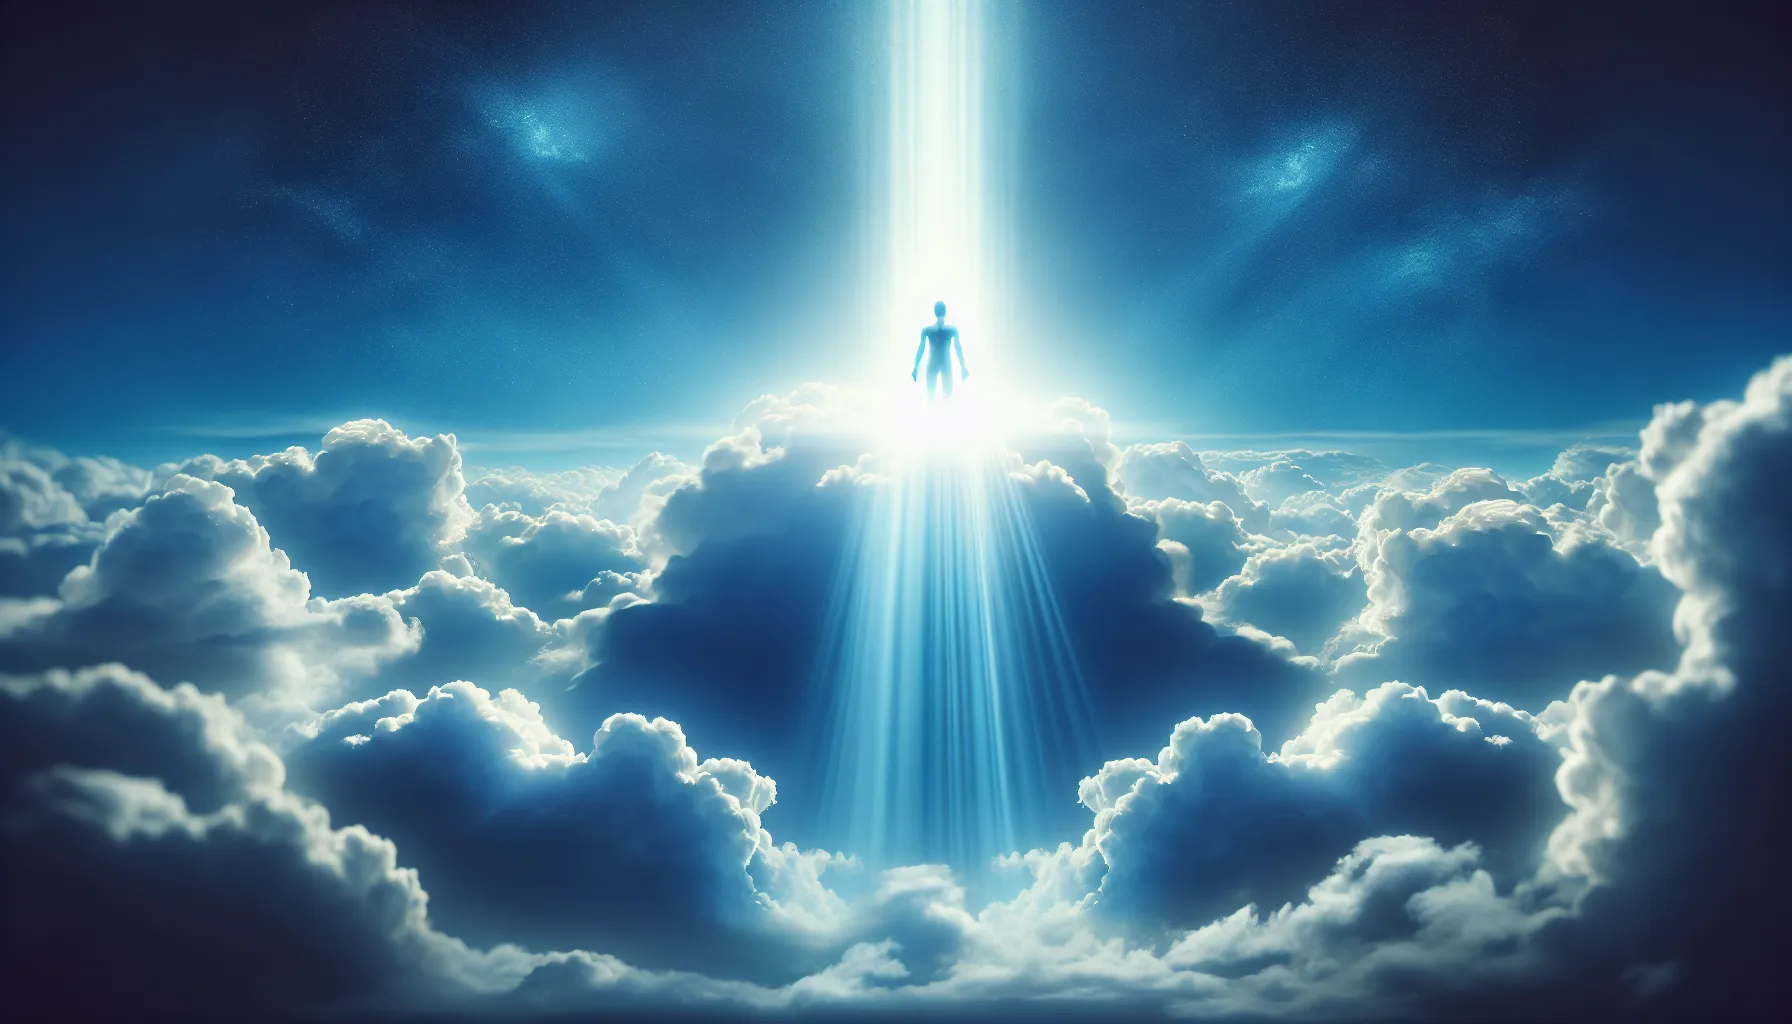 Imagen de un cielo azul con nubes blancas y un rayo de luz brillante iluminando una figura humana